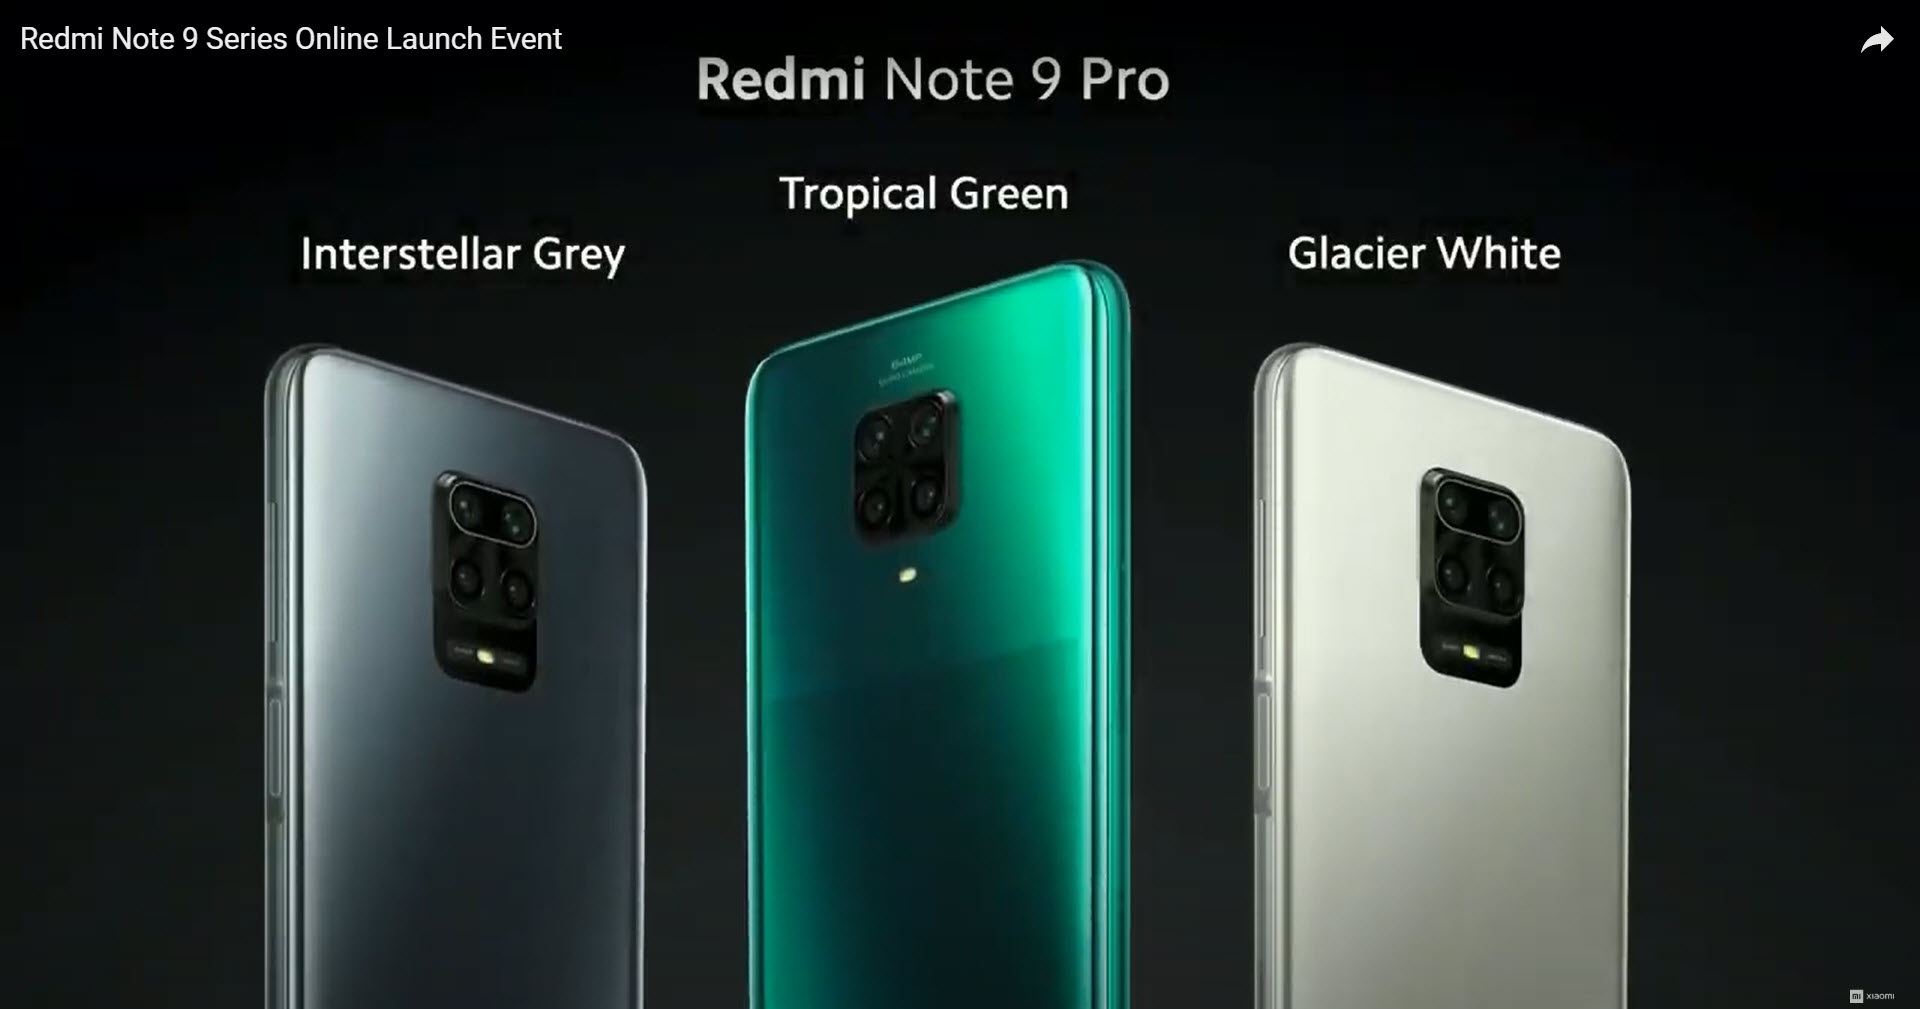 Xiaomi Redmi Note 9 Pro prichádza na globálny trh v polovici mája, k dispozícii sú tri farby - šedá, zelená a biela.